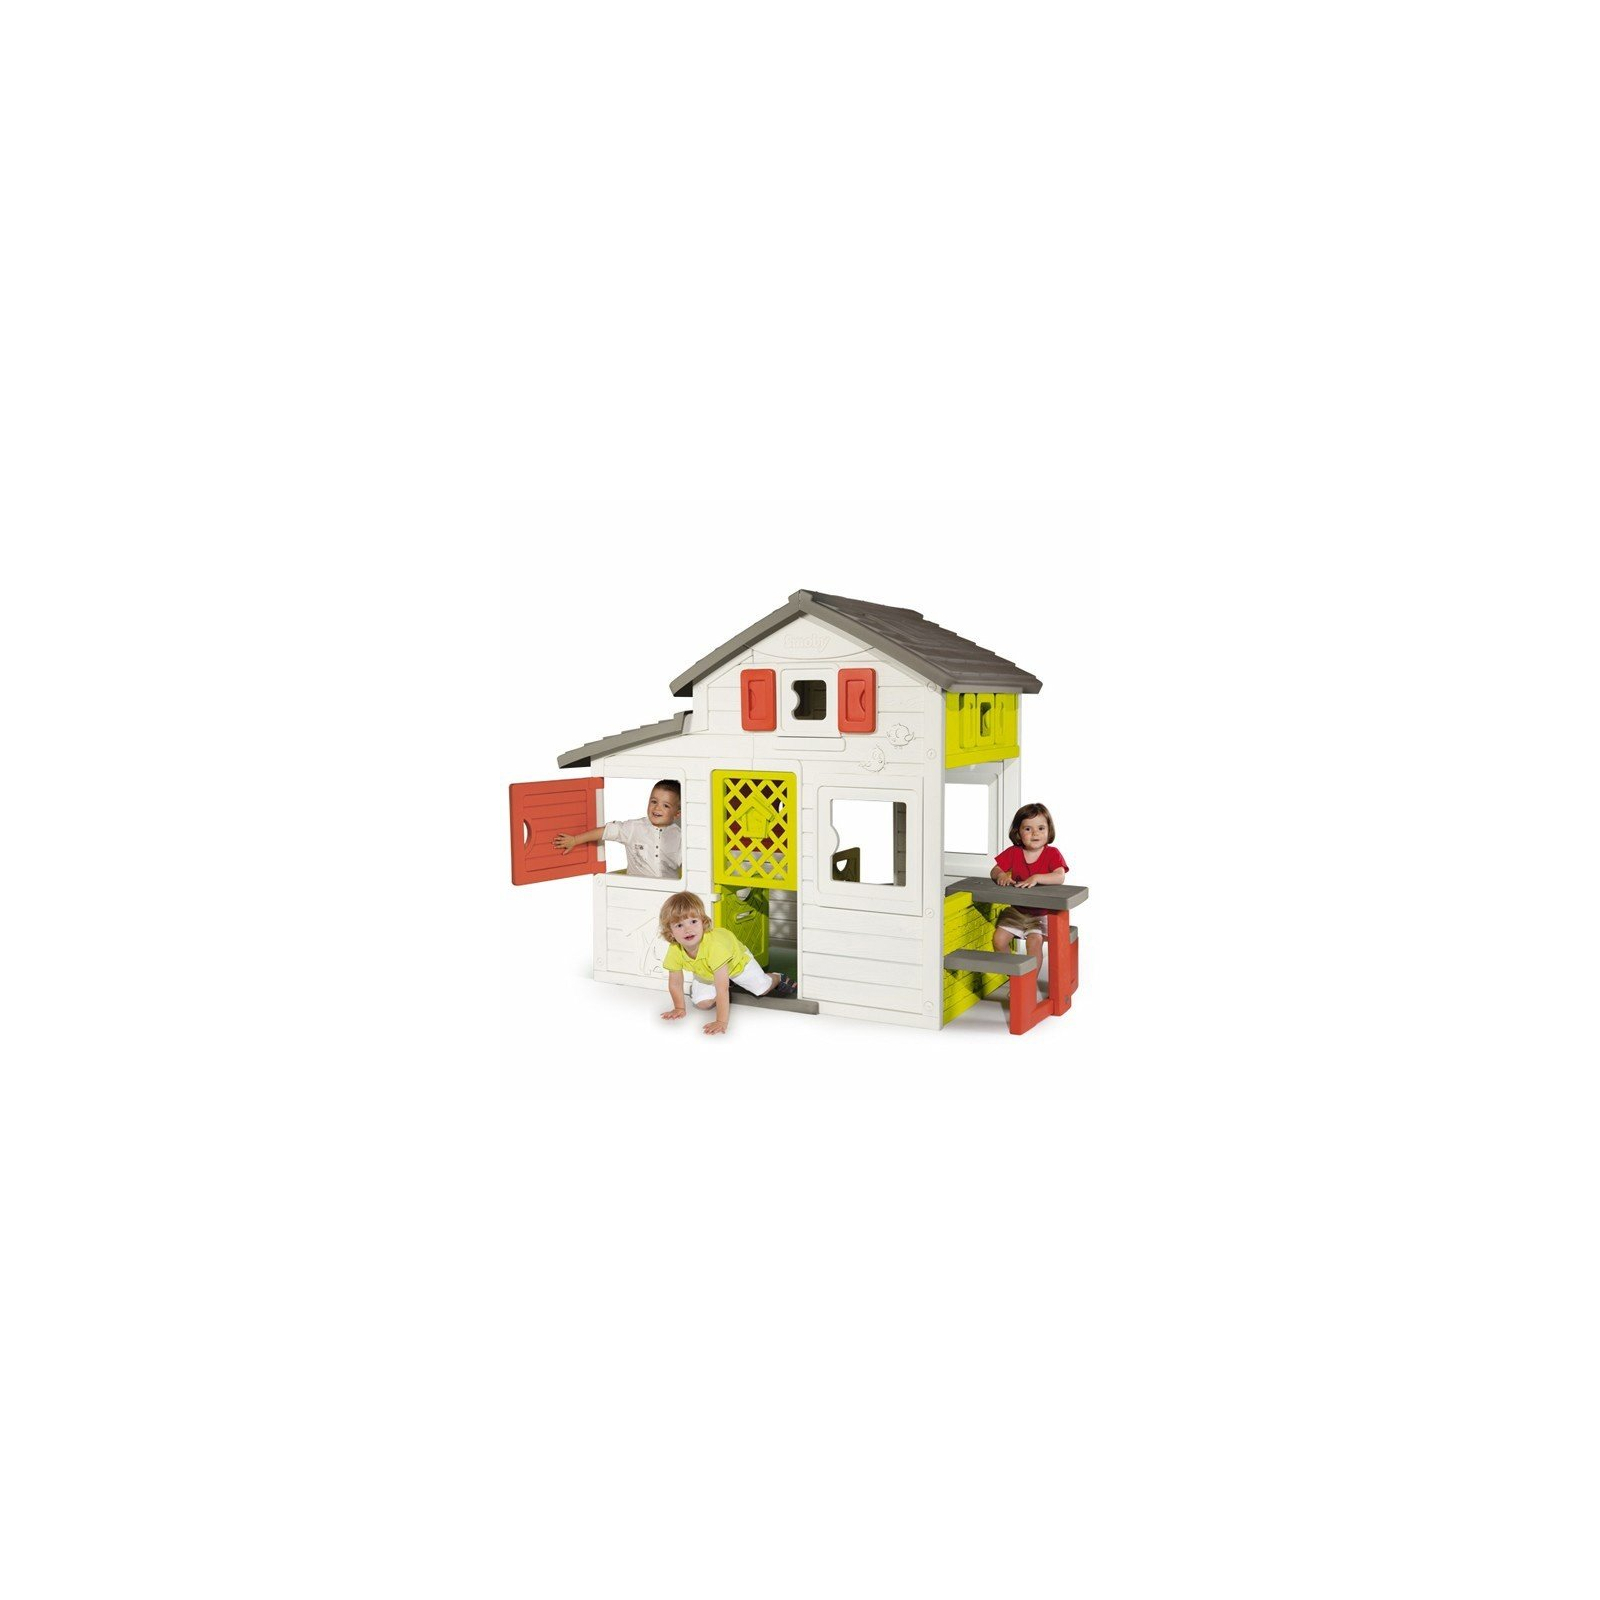 Игровой домик Smoby для друзей c чердаком и дверным звонком (310209) изображение 5